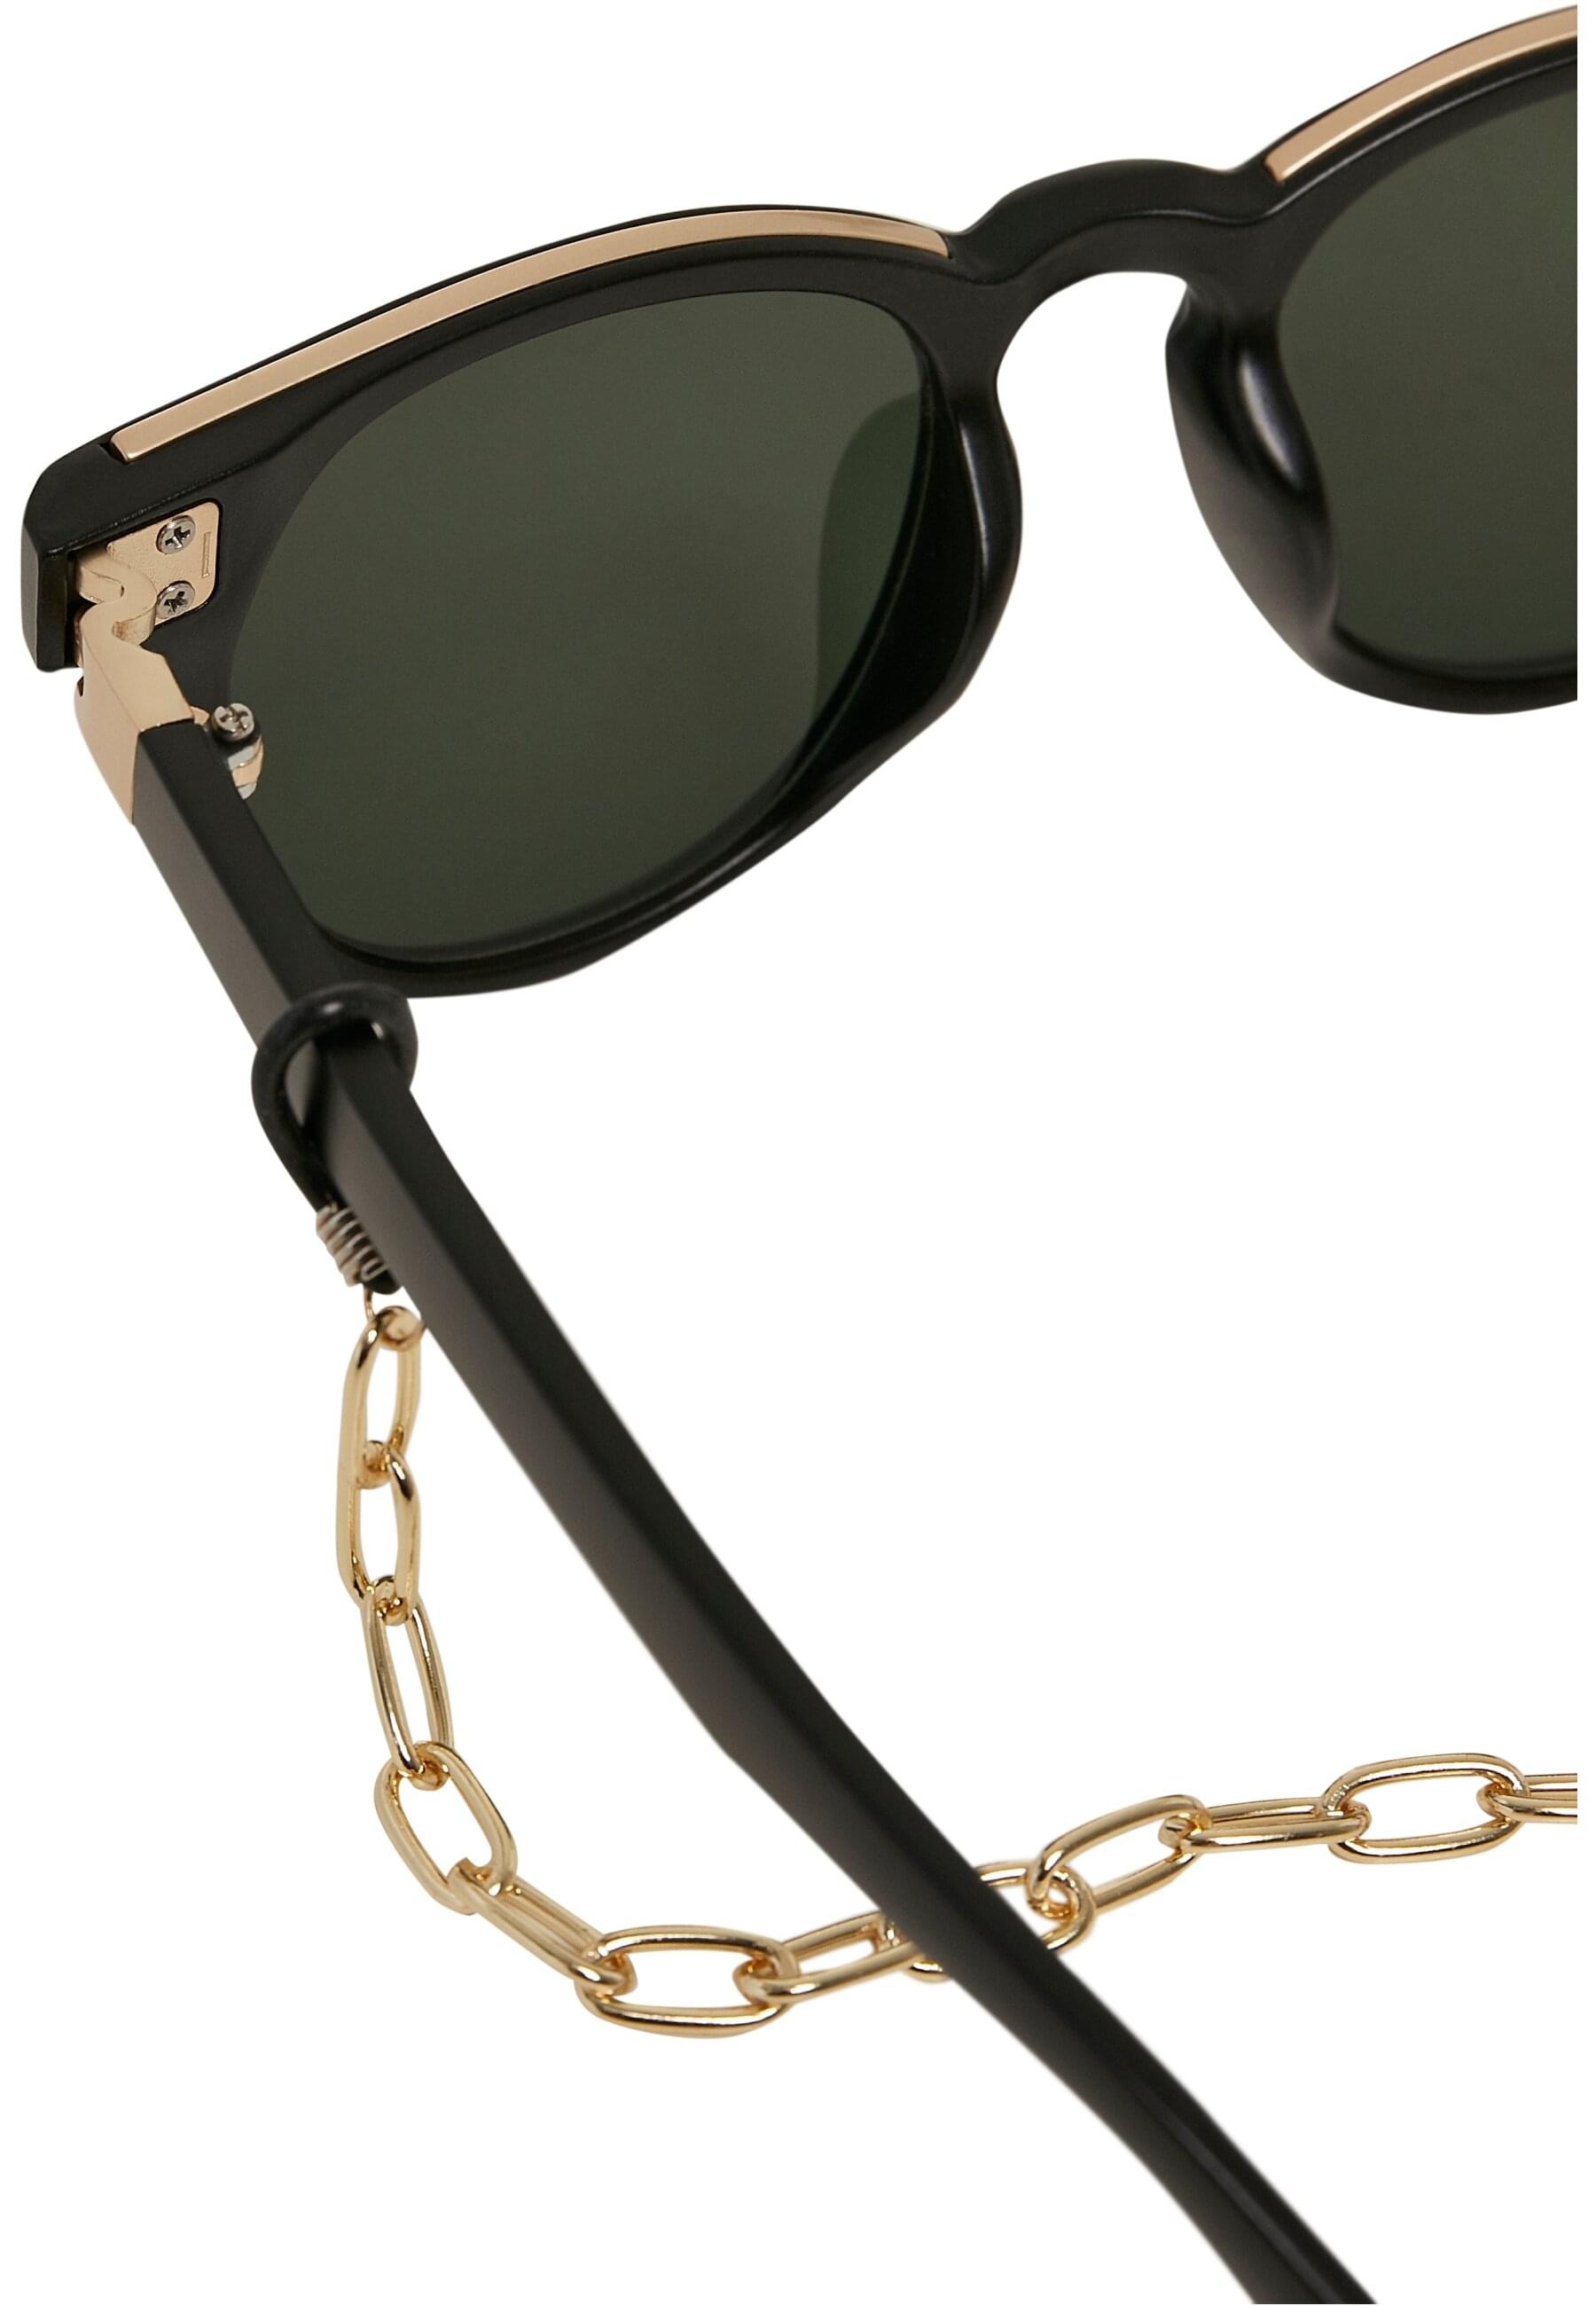 URBAN BAUR with »Unisex chain« online Sonnenbrille CLASSICS Sunglasses bestellen Italy |